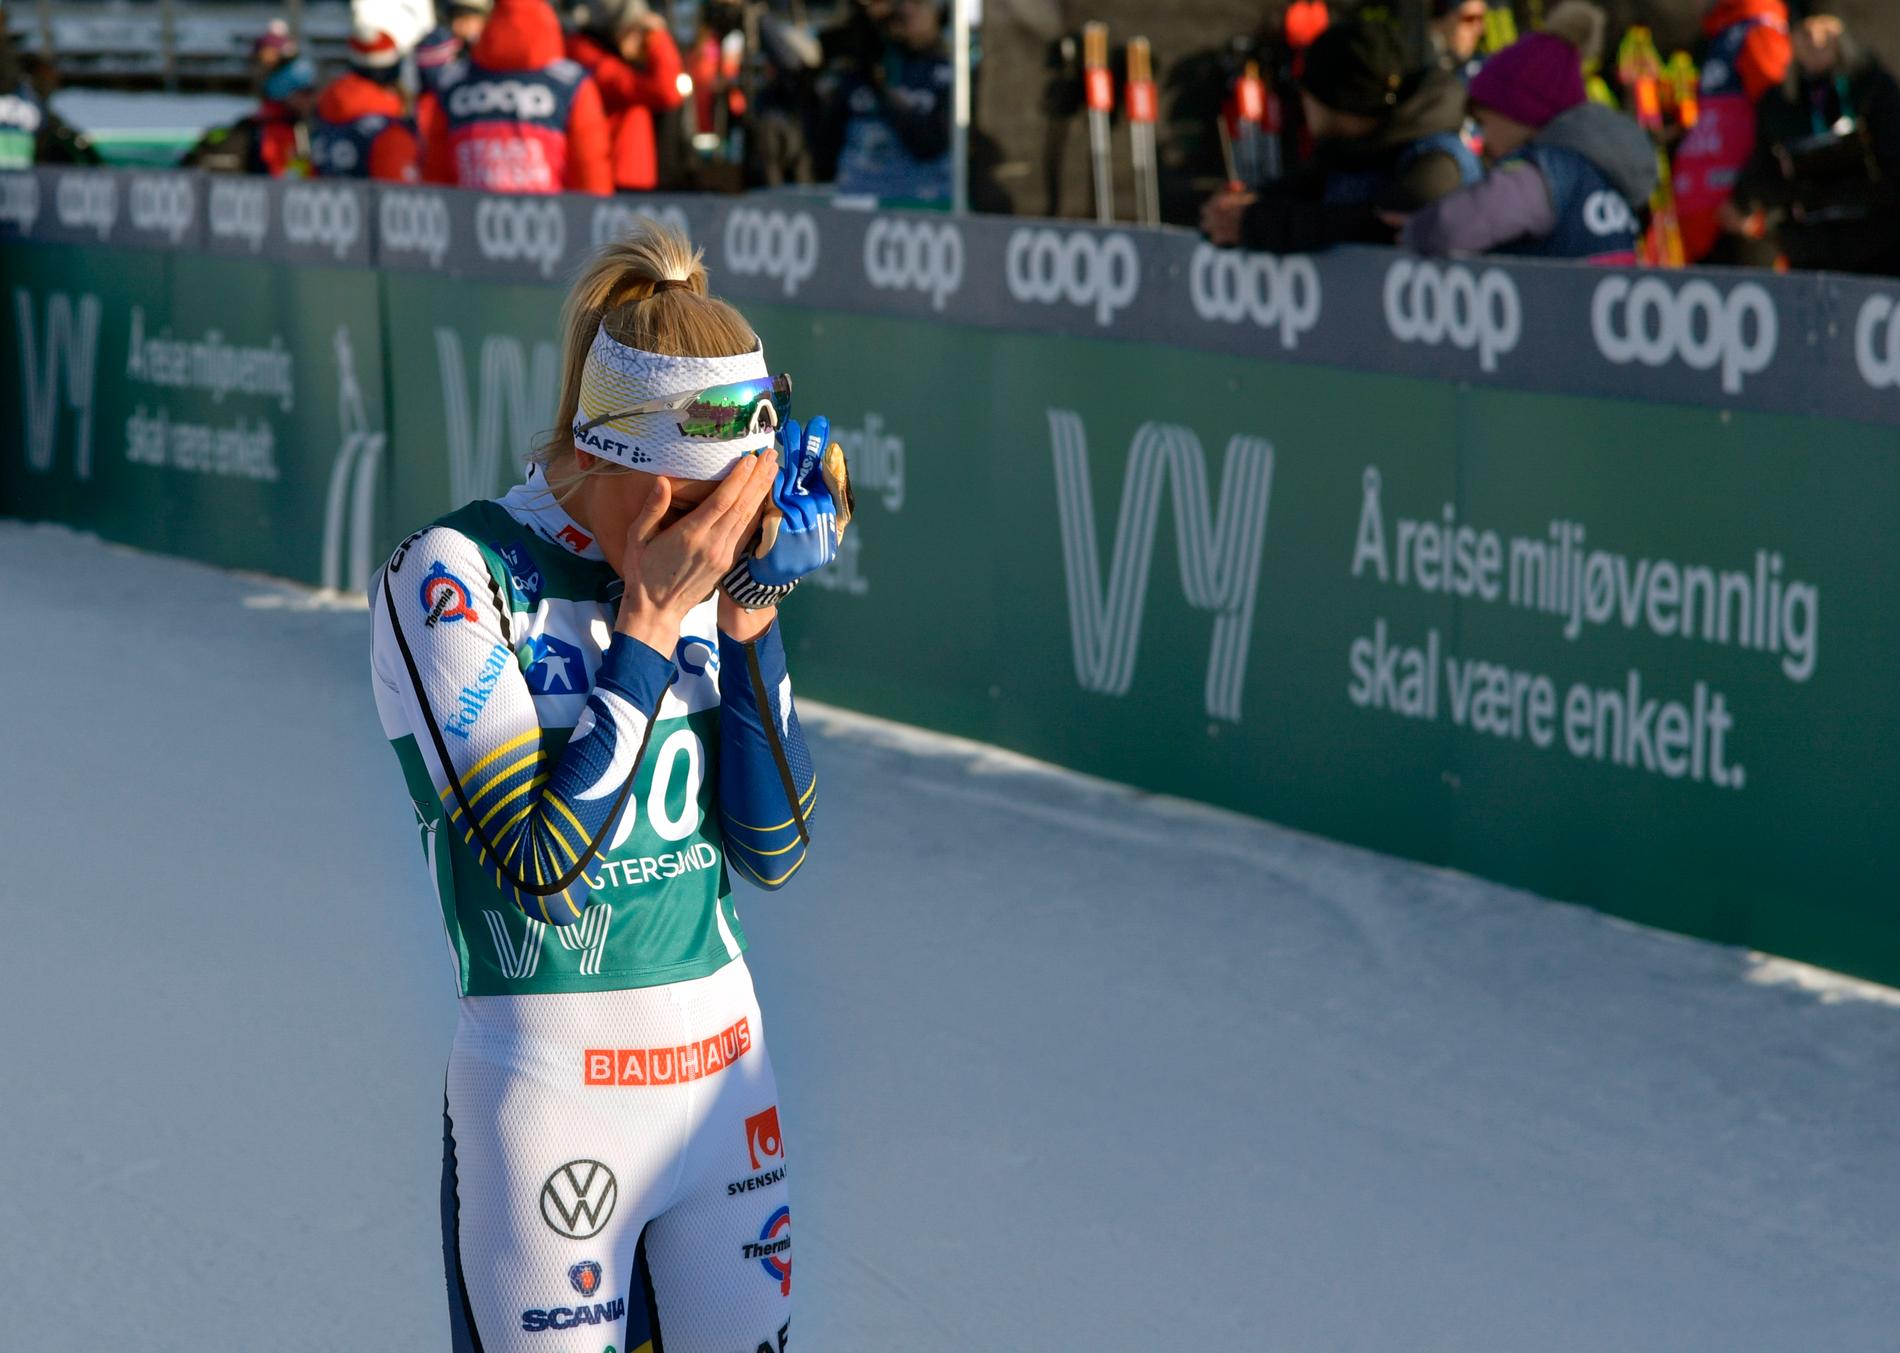 Frida Karlsson efter målgång i 10-kilometersloppet som inledde Ski Tour i Östersund på lördagen.